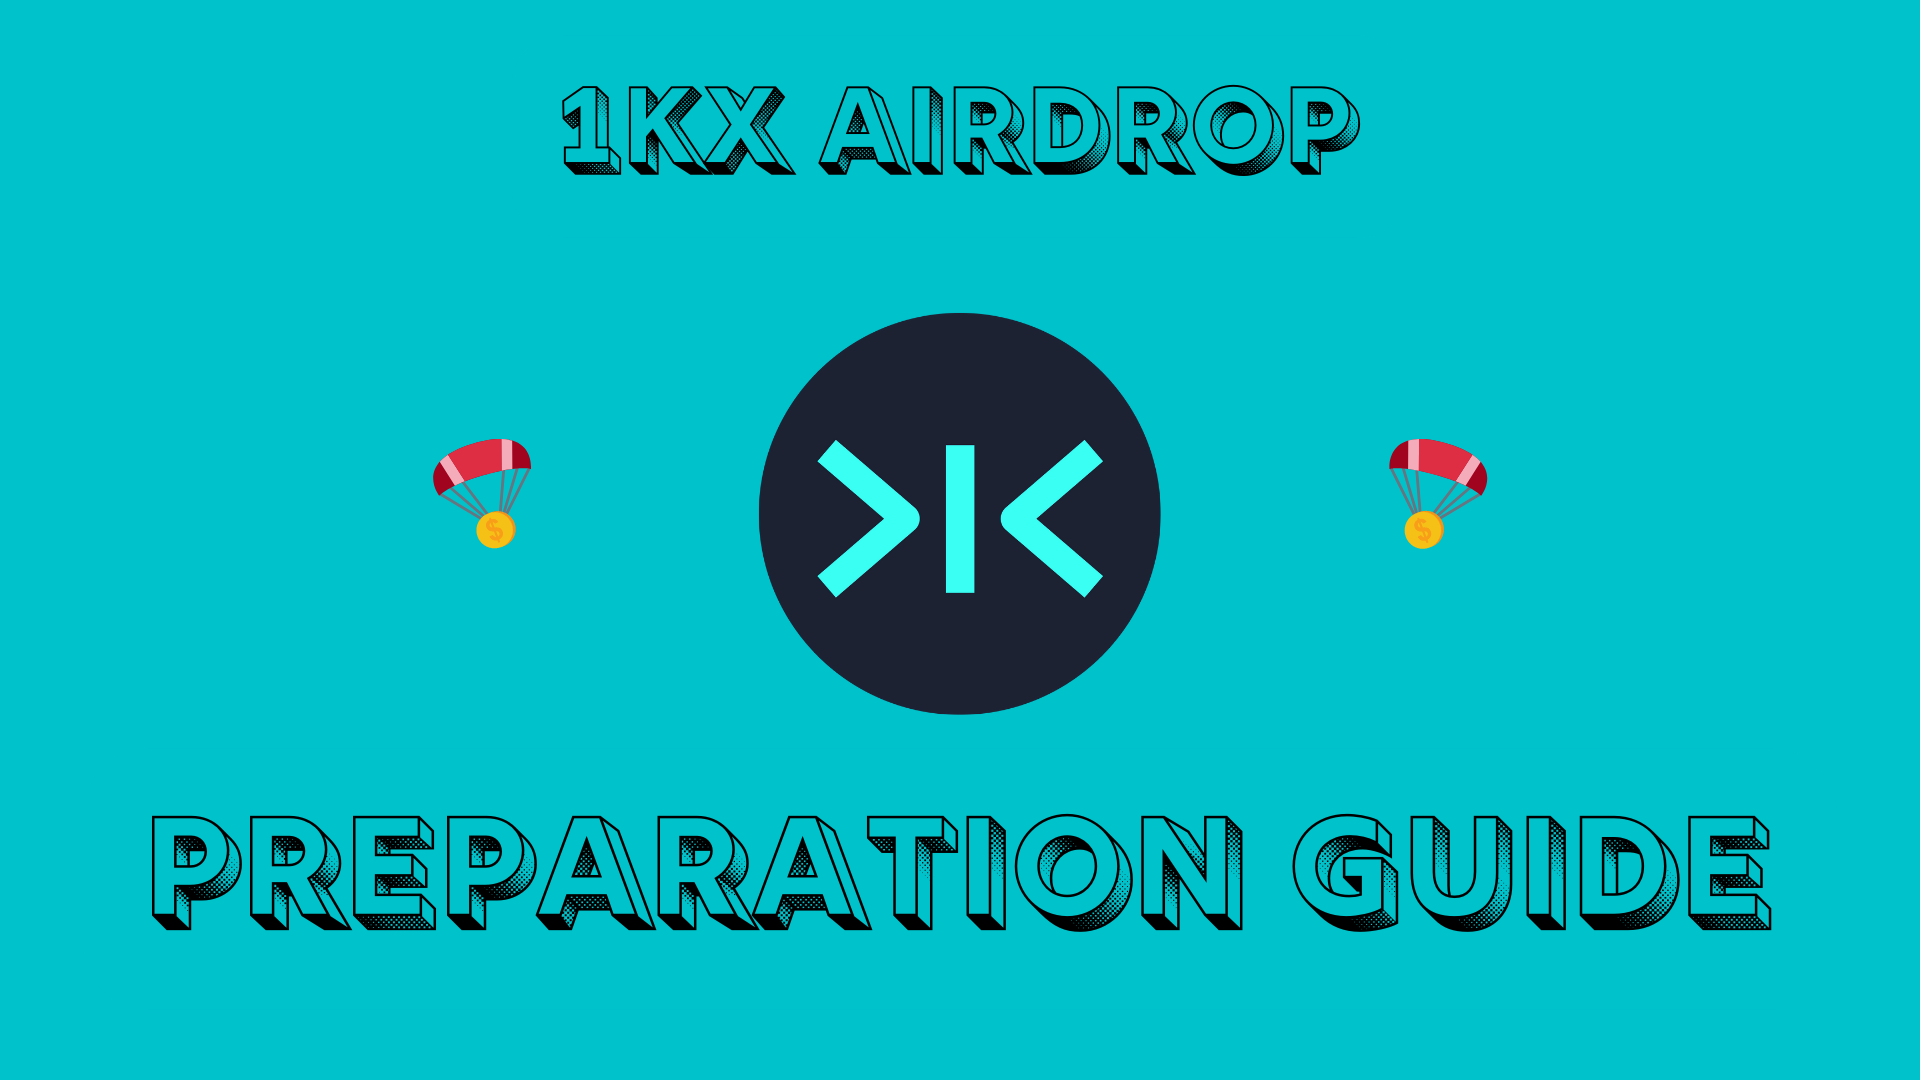 @jerrythefarmer/1kx-airdrop-preparation-guide-test-the-dapp-get-rewarded-when-token-launches